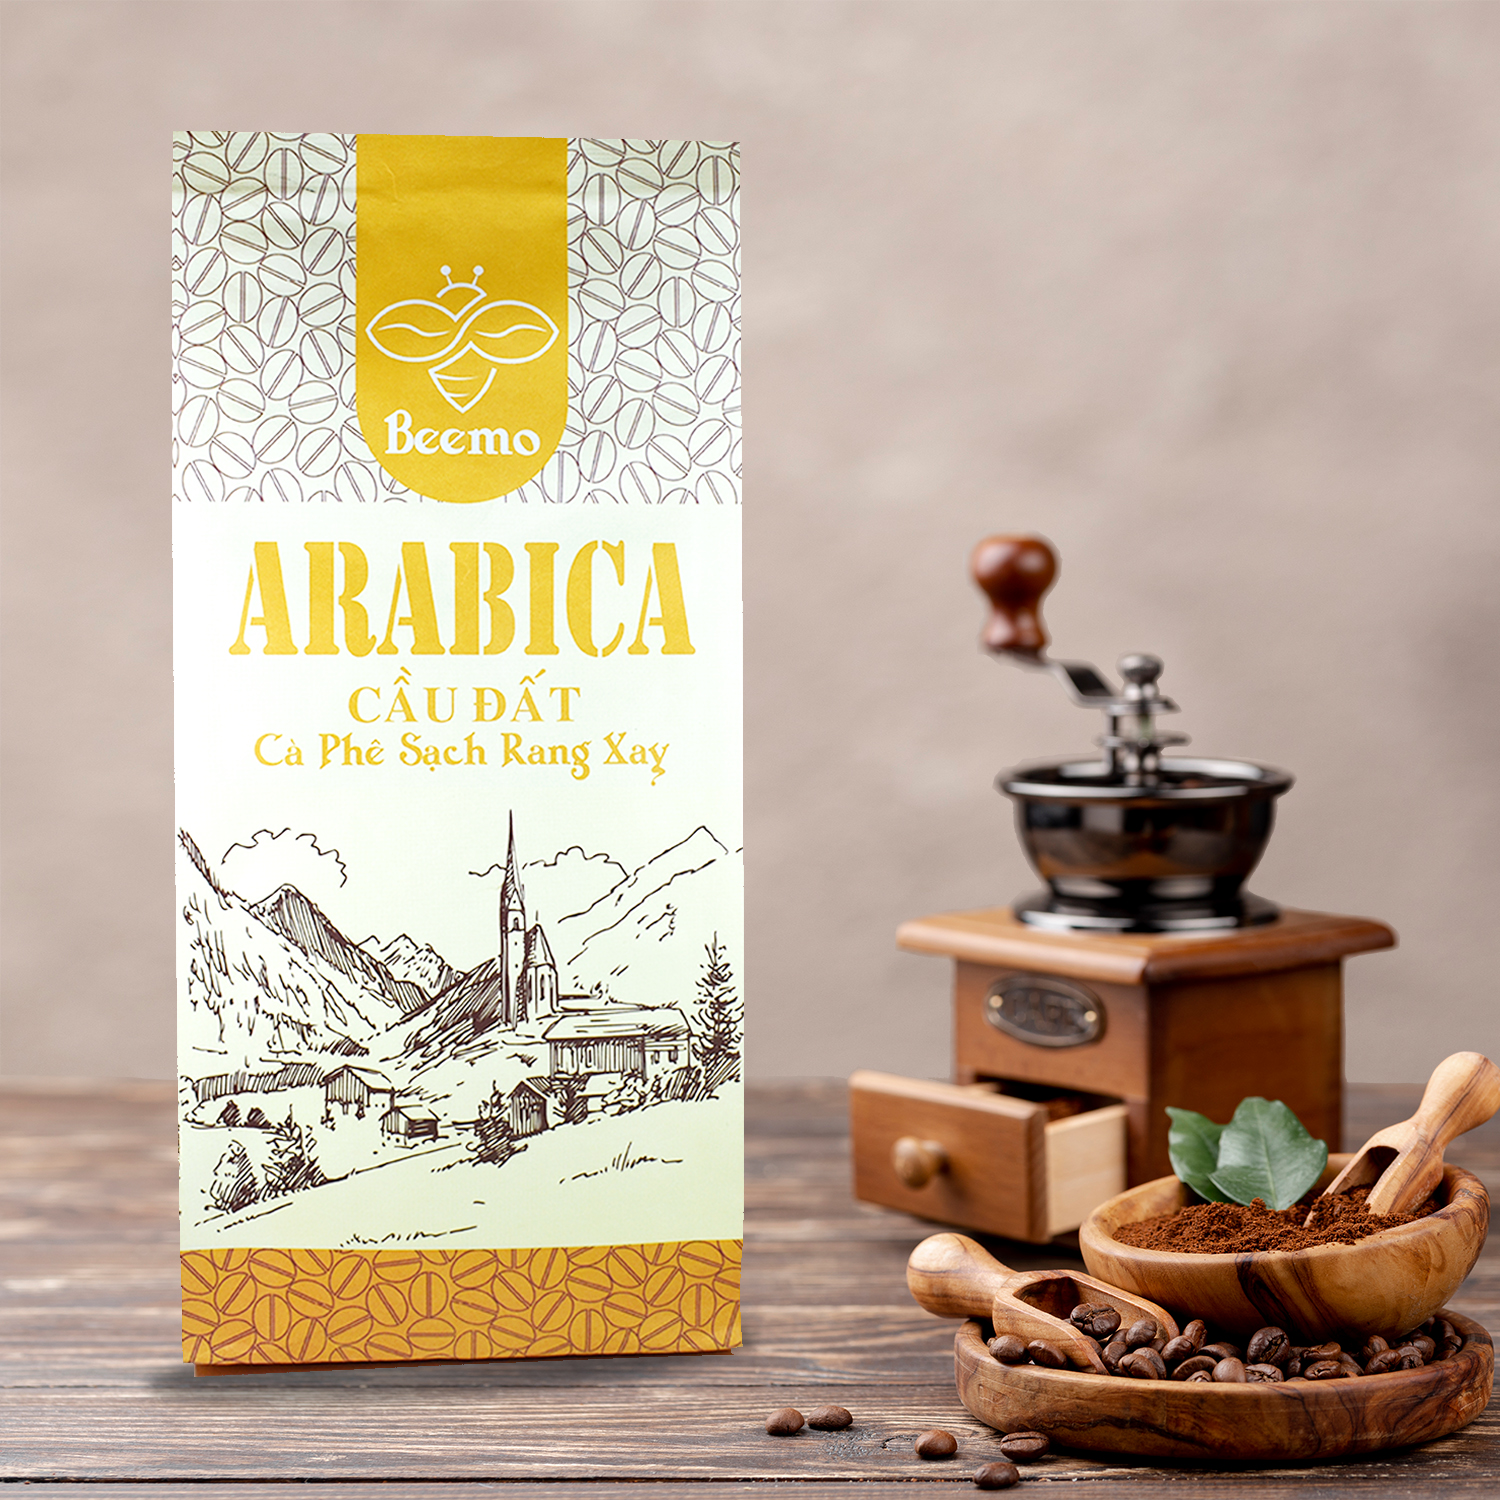 Cà phê nguyên chất Arabica Cầu Đất, cafe mộc rang xay Beemo 500g - Đắng ít, chua thanh, thơm, hậu vị ngọt